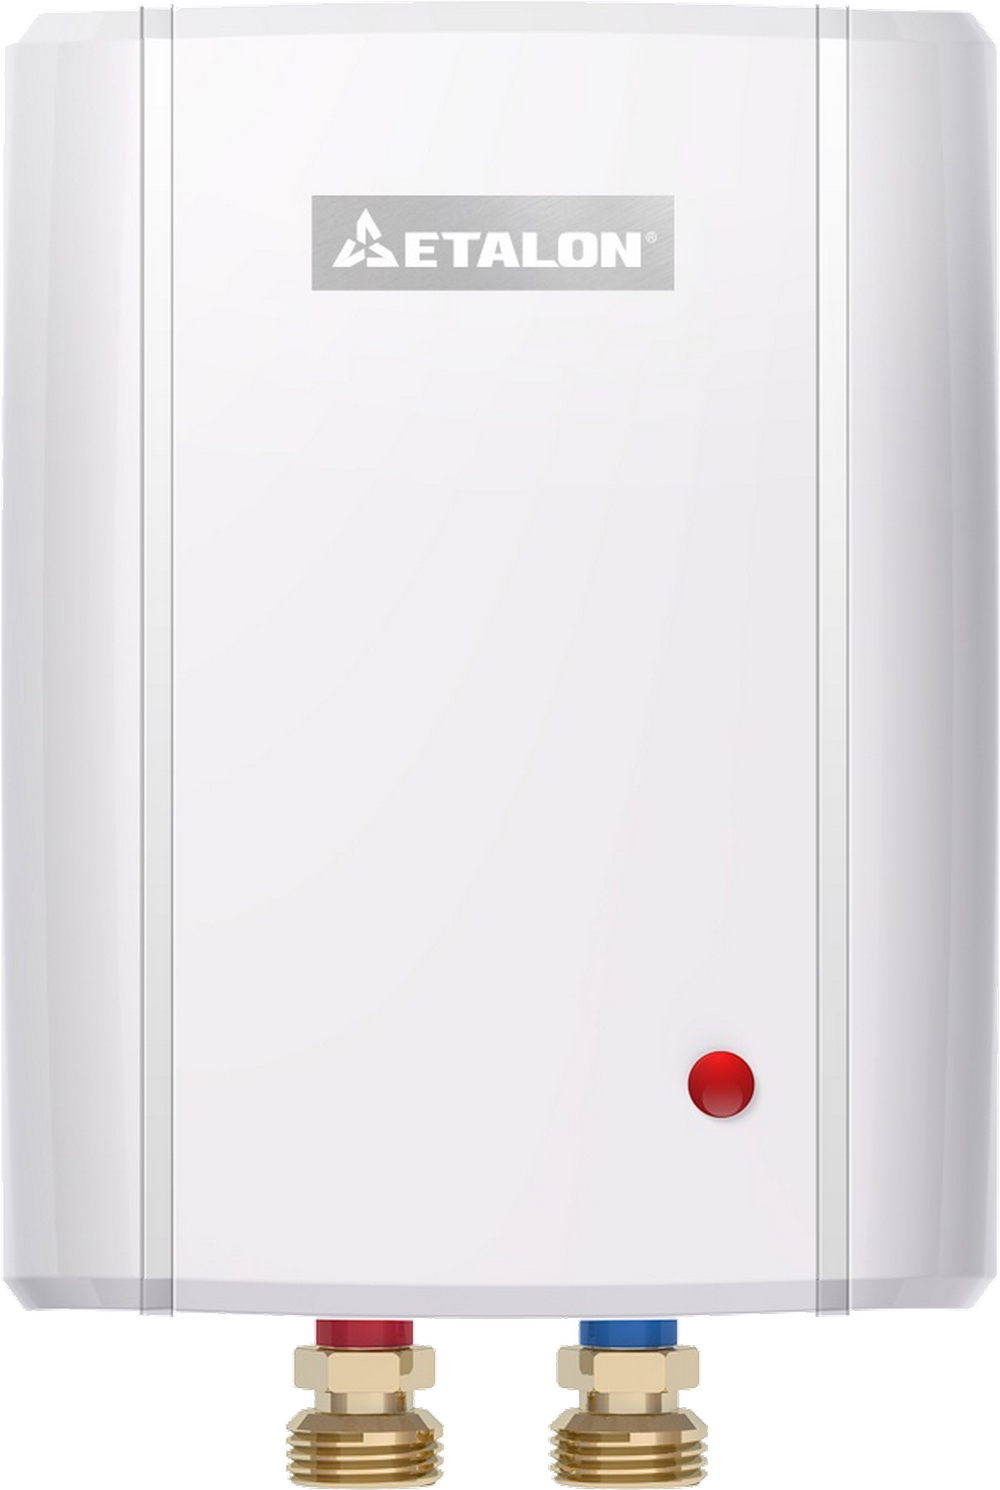 Проточный водонагреватель Etalon Plus 4500 в интернет-магазине, главное фото